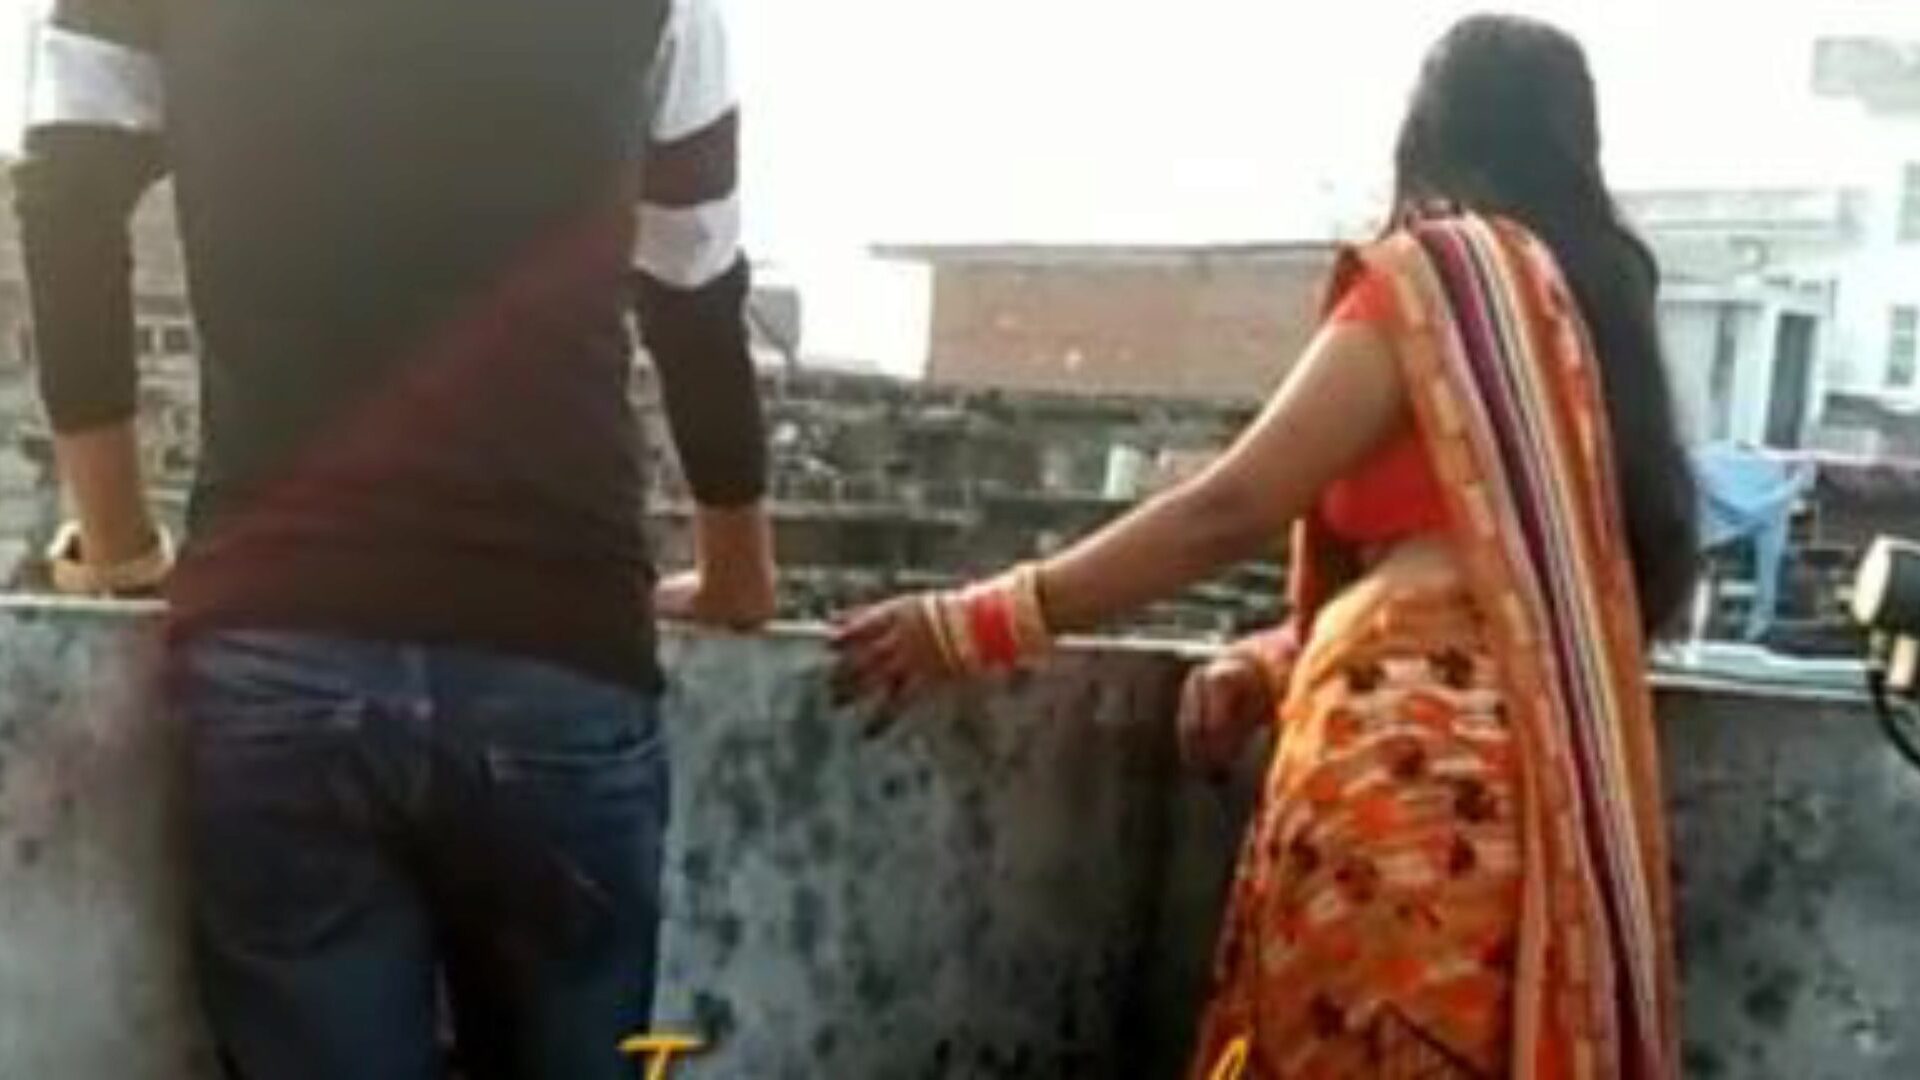 Ινδικό σπιτικό βίντεο γαμημένο σύζυγο φίλου: δωρεάν πορνό fd παρακολουθήστε ινδικό σπιτικό βίντεο γαμημένο επεισόδιο φίλου του συζύγου στο xhamster - η απόλυτη βάση δεδομένων του δωρεάν-για-όλα hardcore & σπιτική σύζυγος σκατά επεισόδια πορνογραφικού σωλήνα